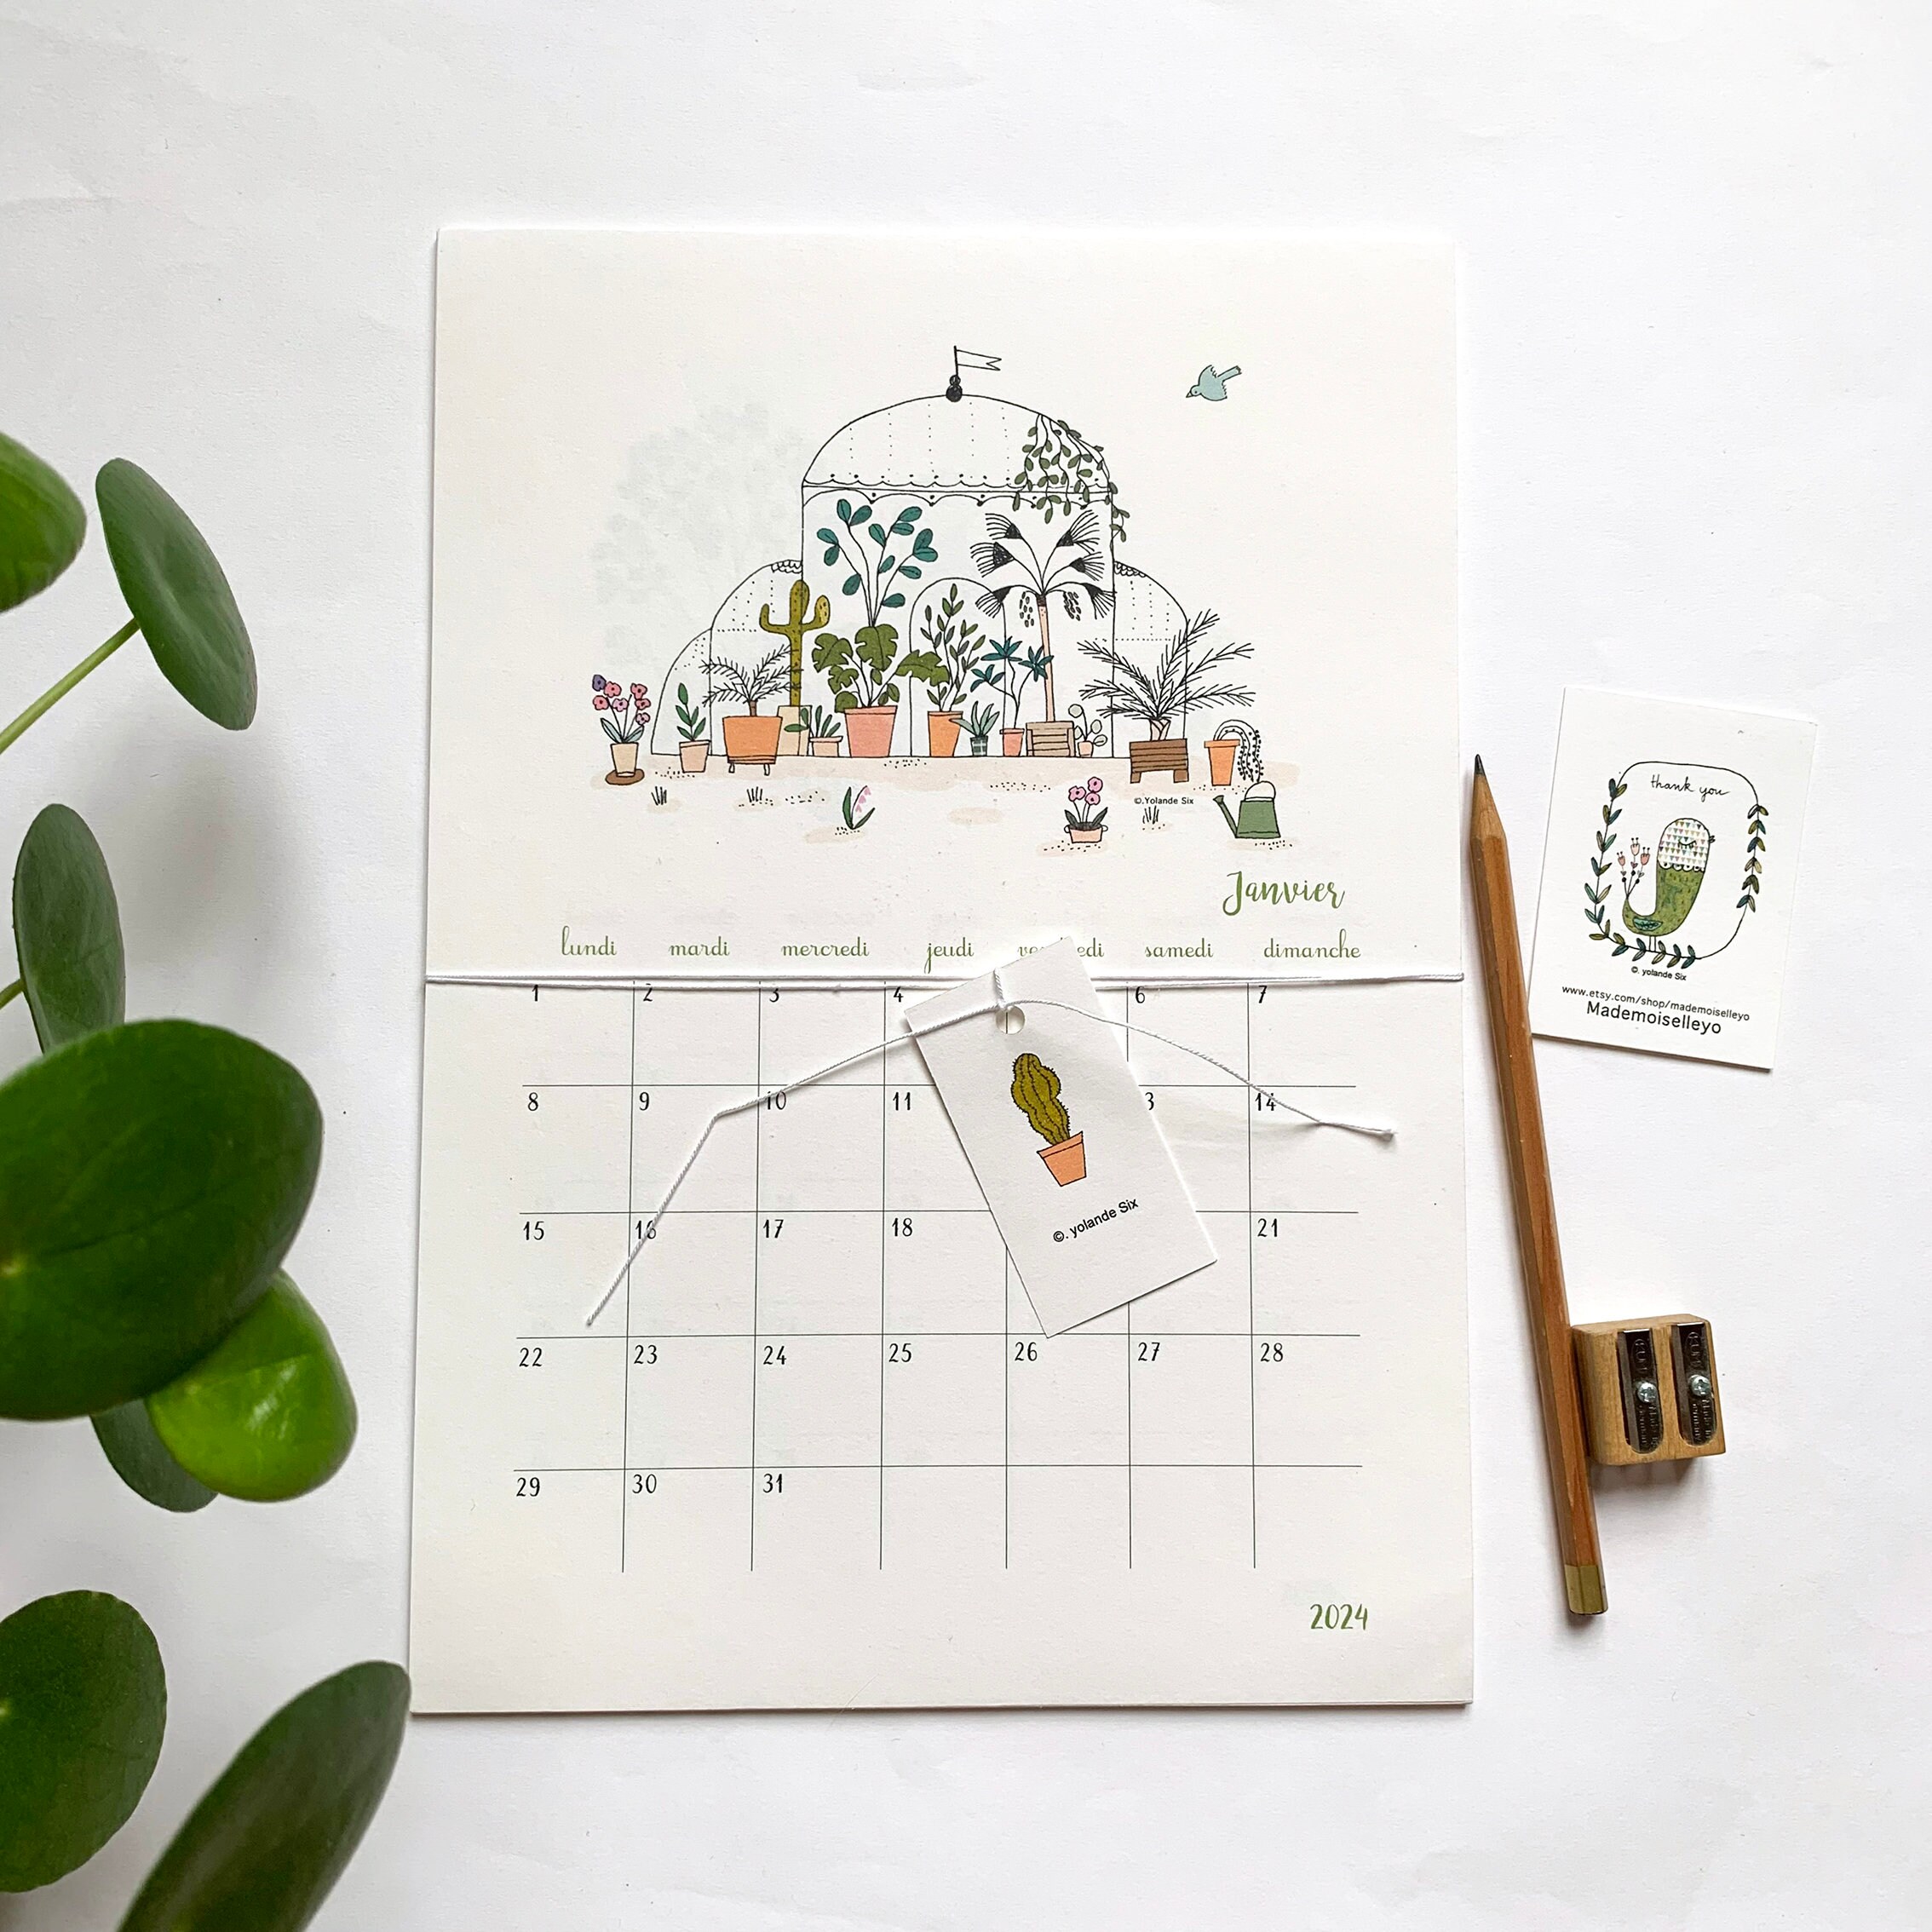 Plantilla de calendario lunar 2024 dibujada a mano con hojas y vegetación